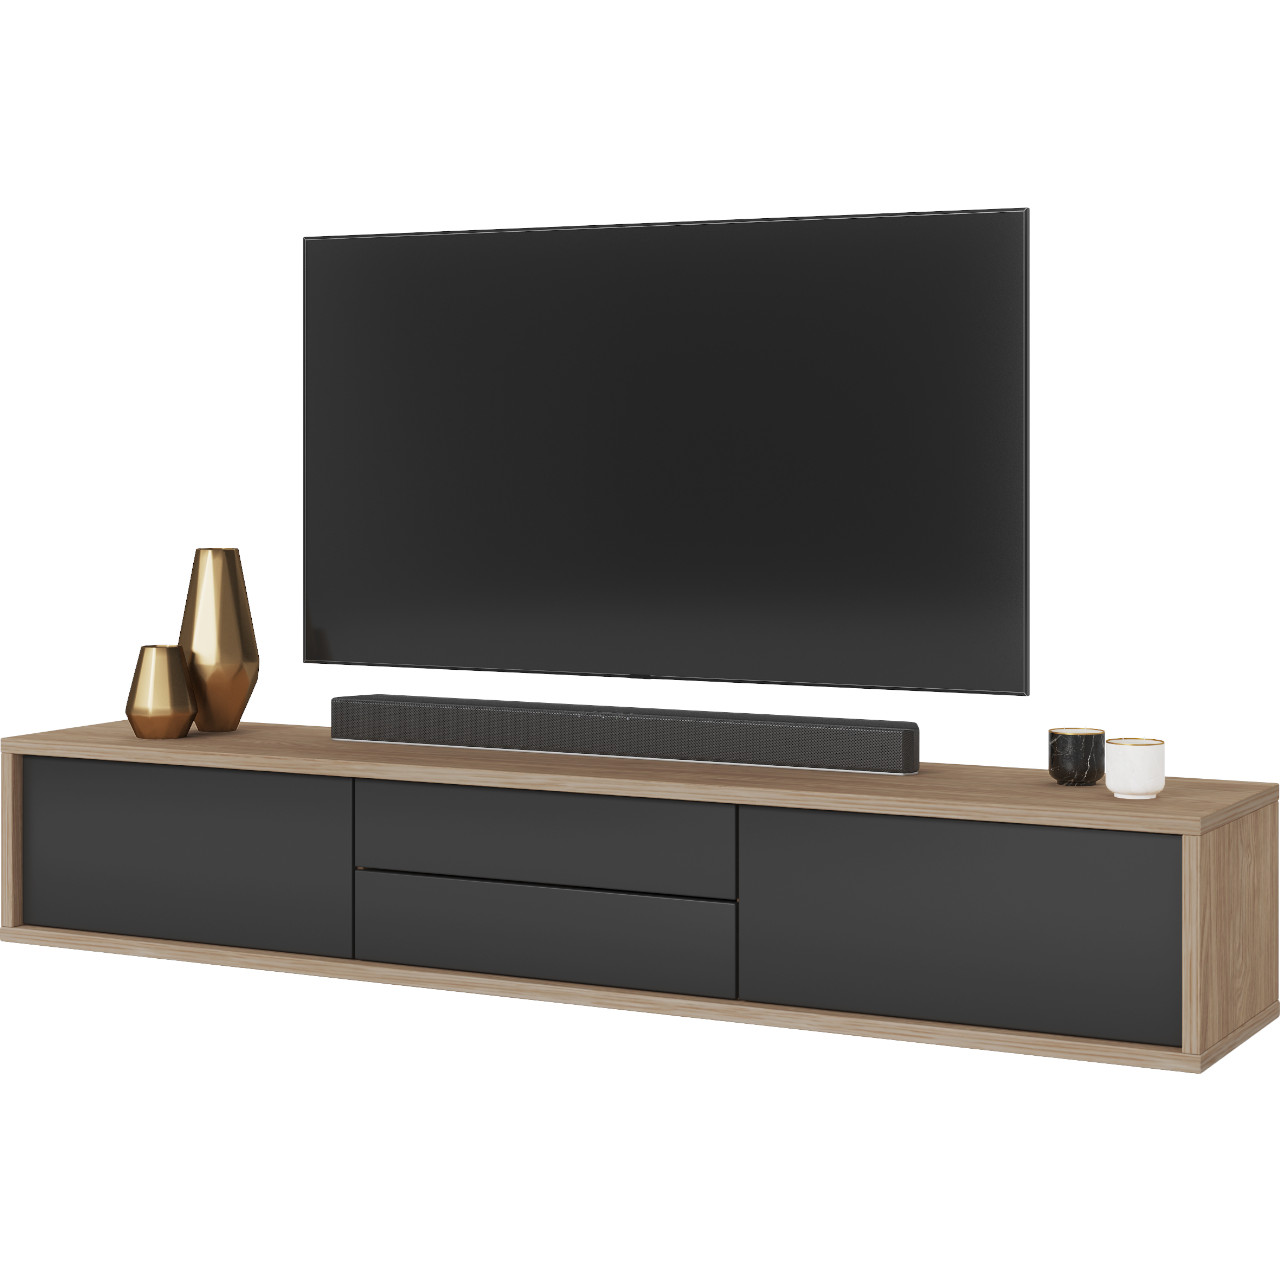 TV cabinet RIDAF 39 oak / anthracite